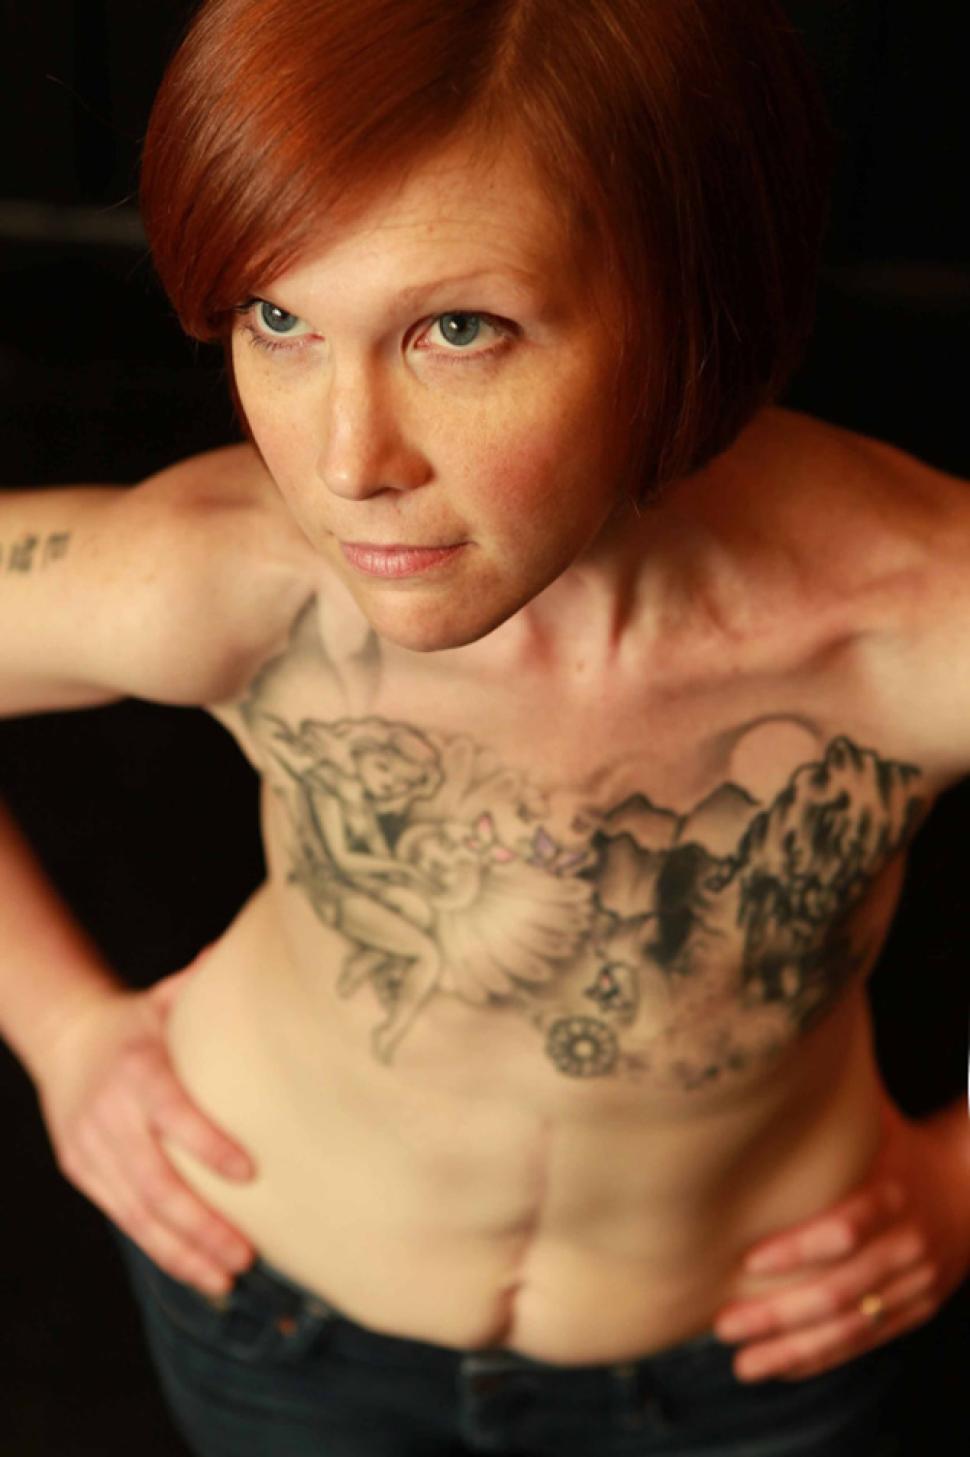 Татуировки на груди у женщин